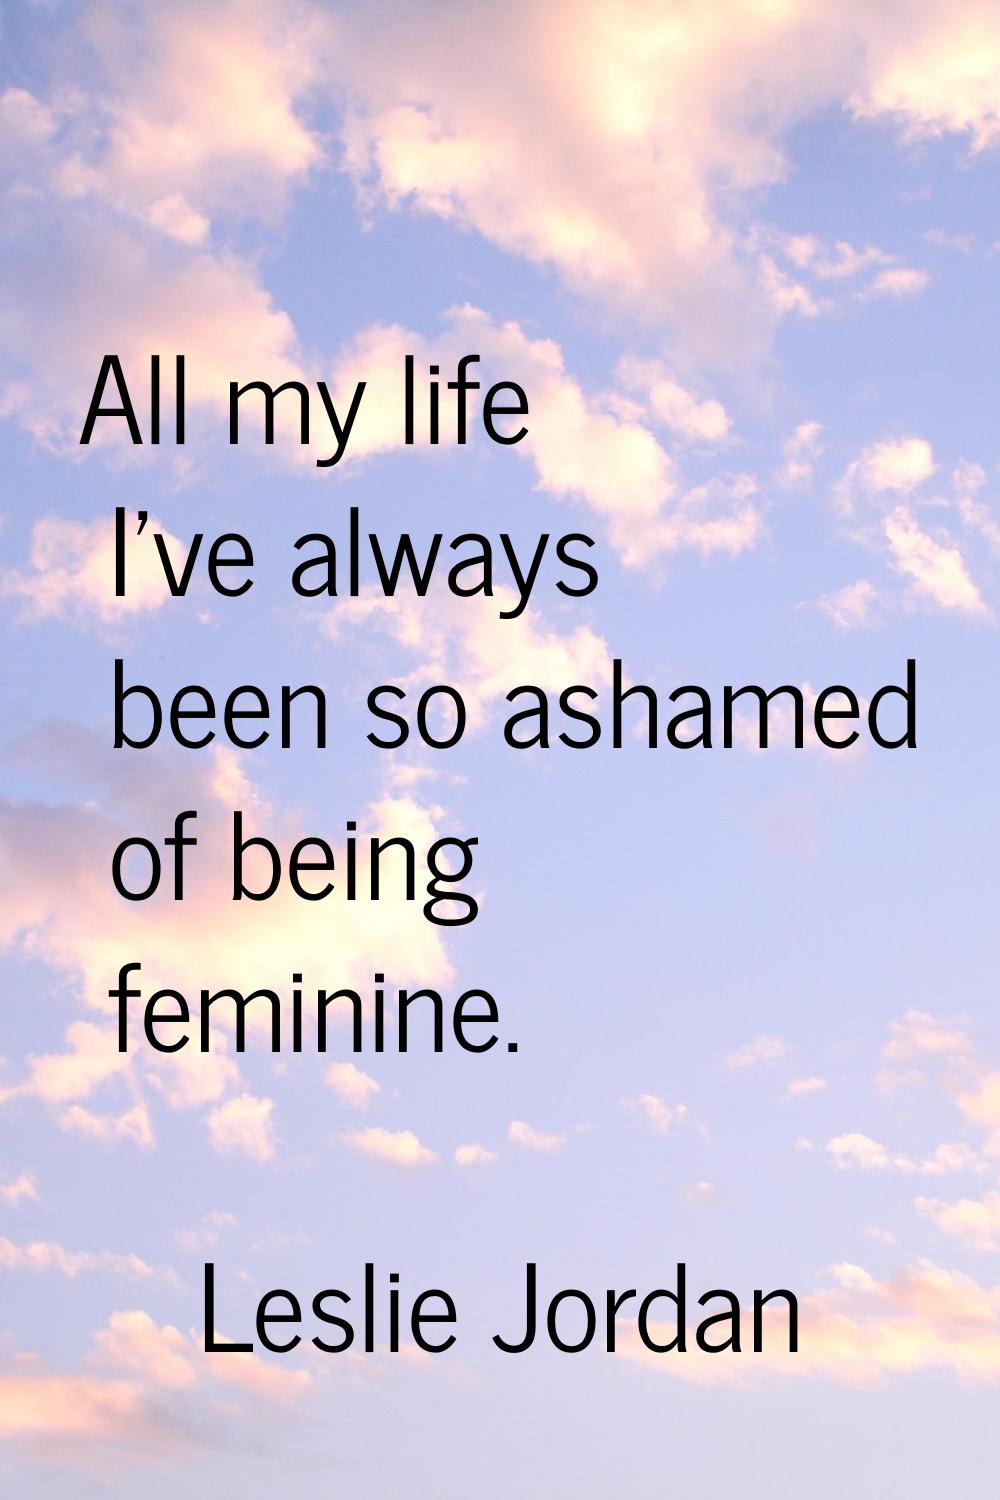 All my life I've always been so ashamed of being feminine.